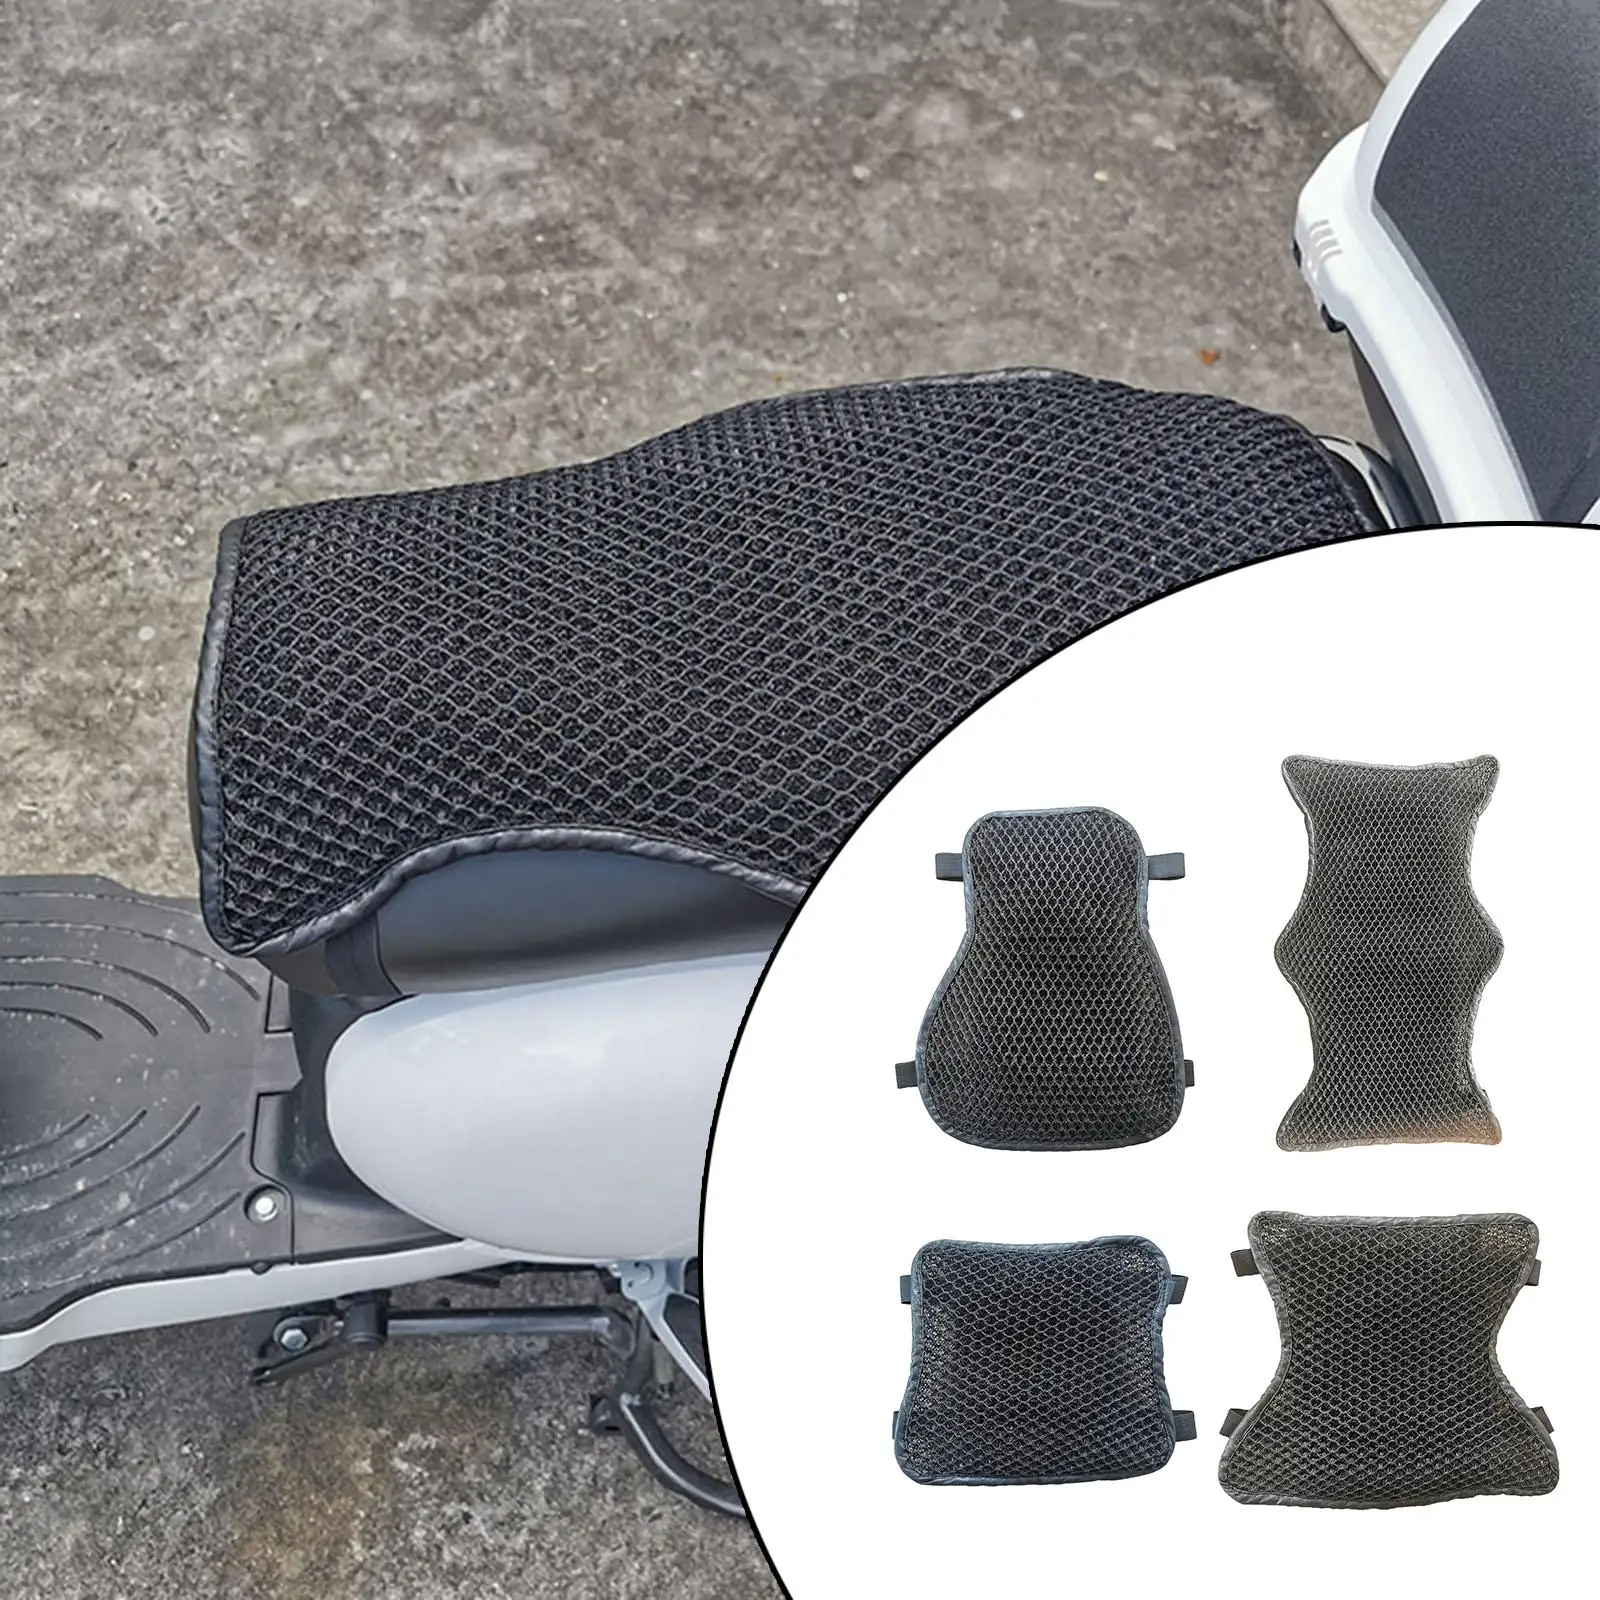 Motorcycle Seat Cushion Anti- Passenger Fit for Touring Motorbike